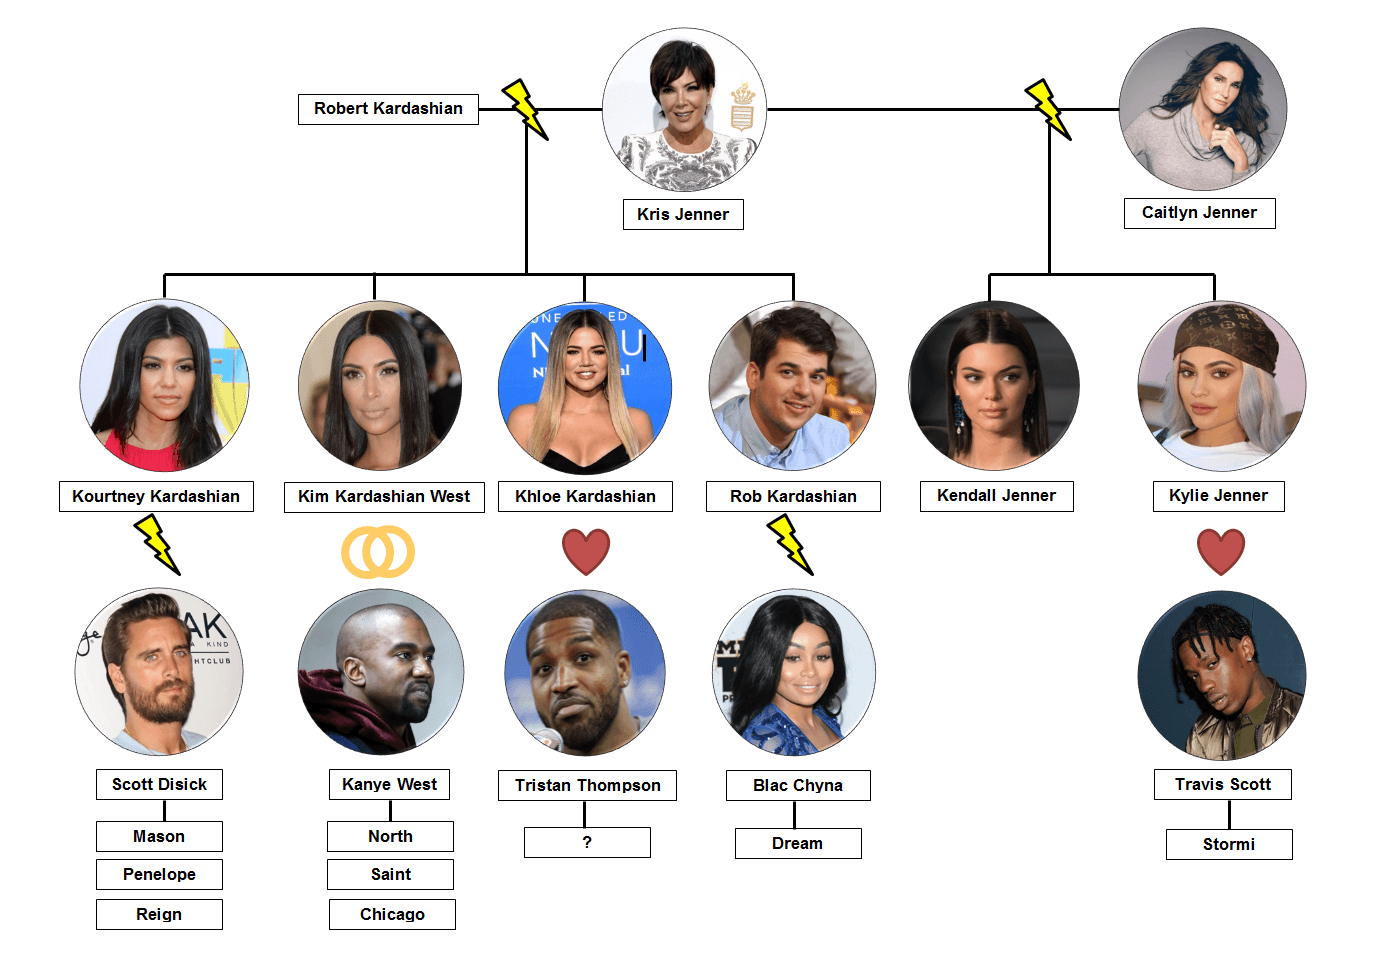 Der Stammbaum der Kardashian-Jenners